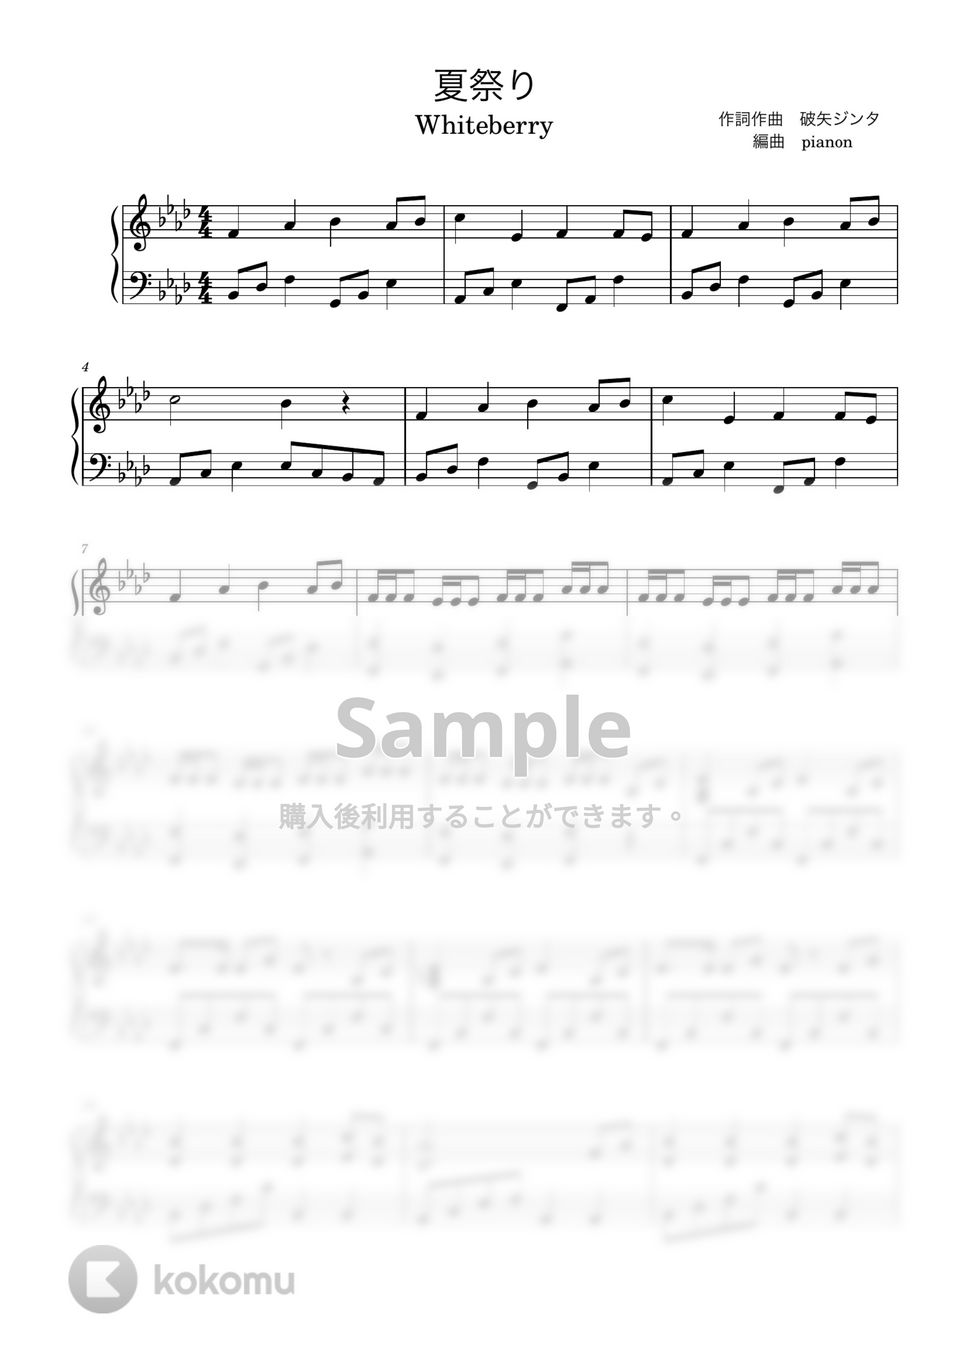 whiteberry - 夏祭り (ピアノ上級ソロ) by pianon